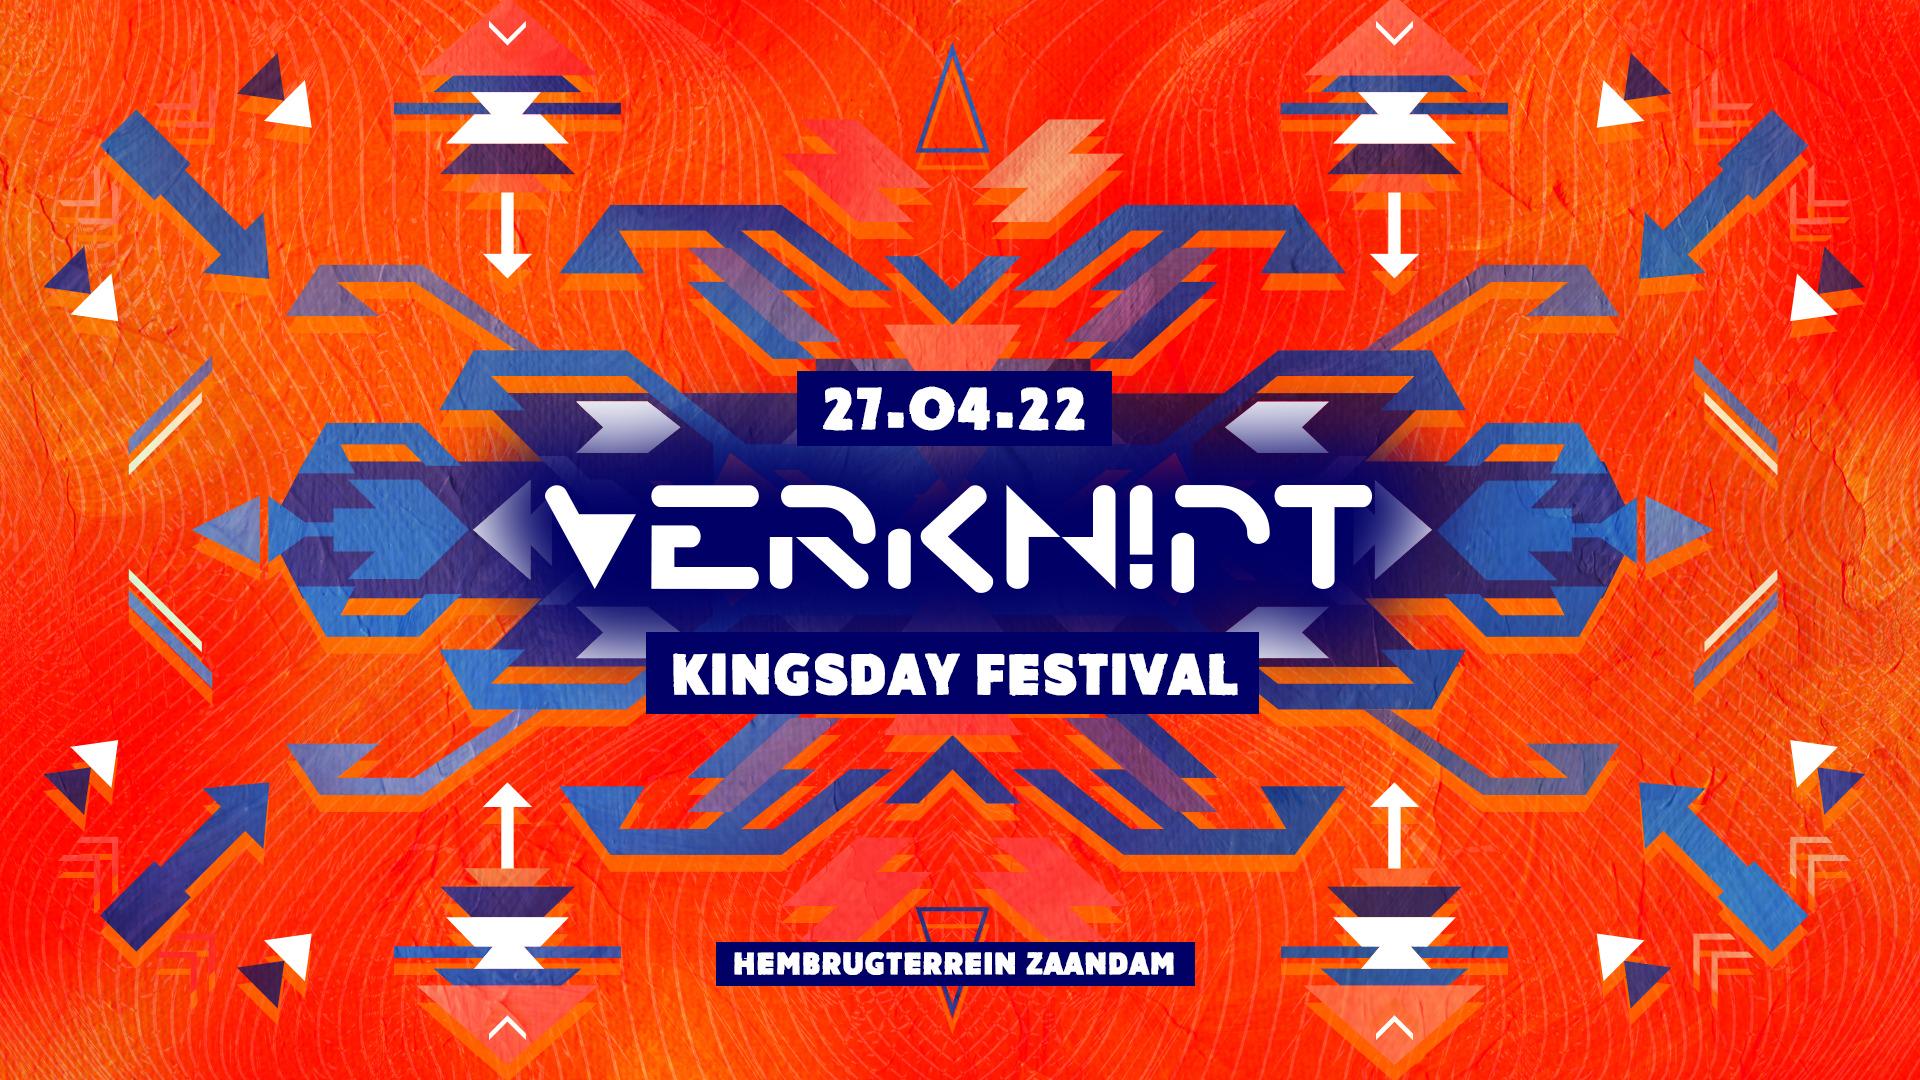 Verknipt Kingsday Festival